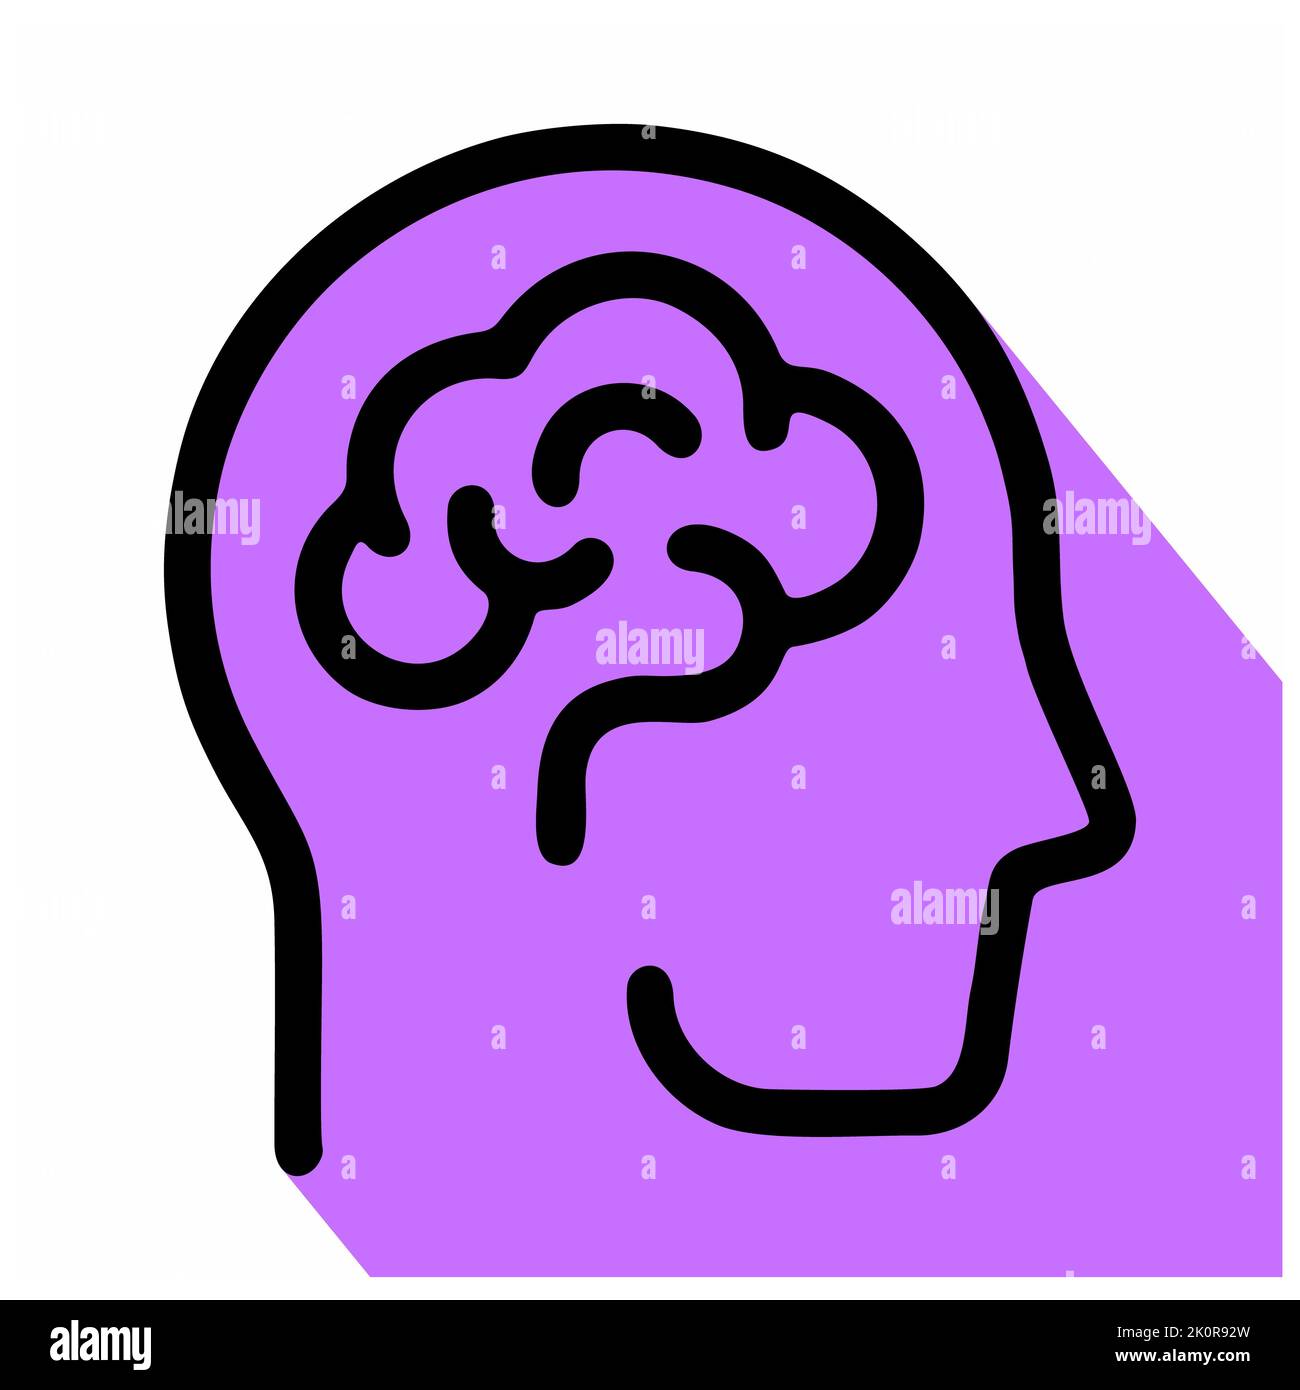 Icona del cervello umano isolata su sfondo bianco dalla collezione scientifica. Icona del cervello umano moderno e alla moda simbolo del cervello umano per logo, web, app, UI. H Foto Stock